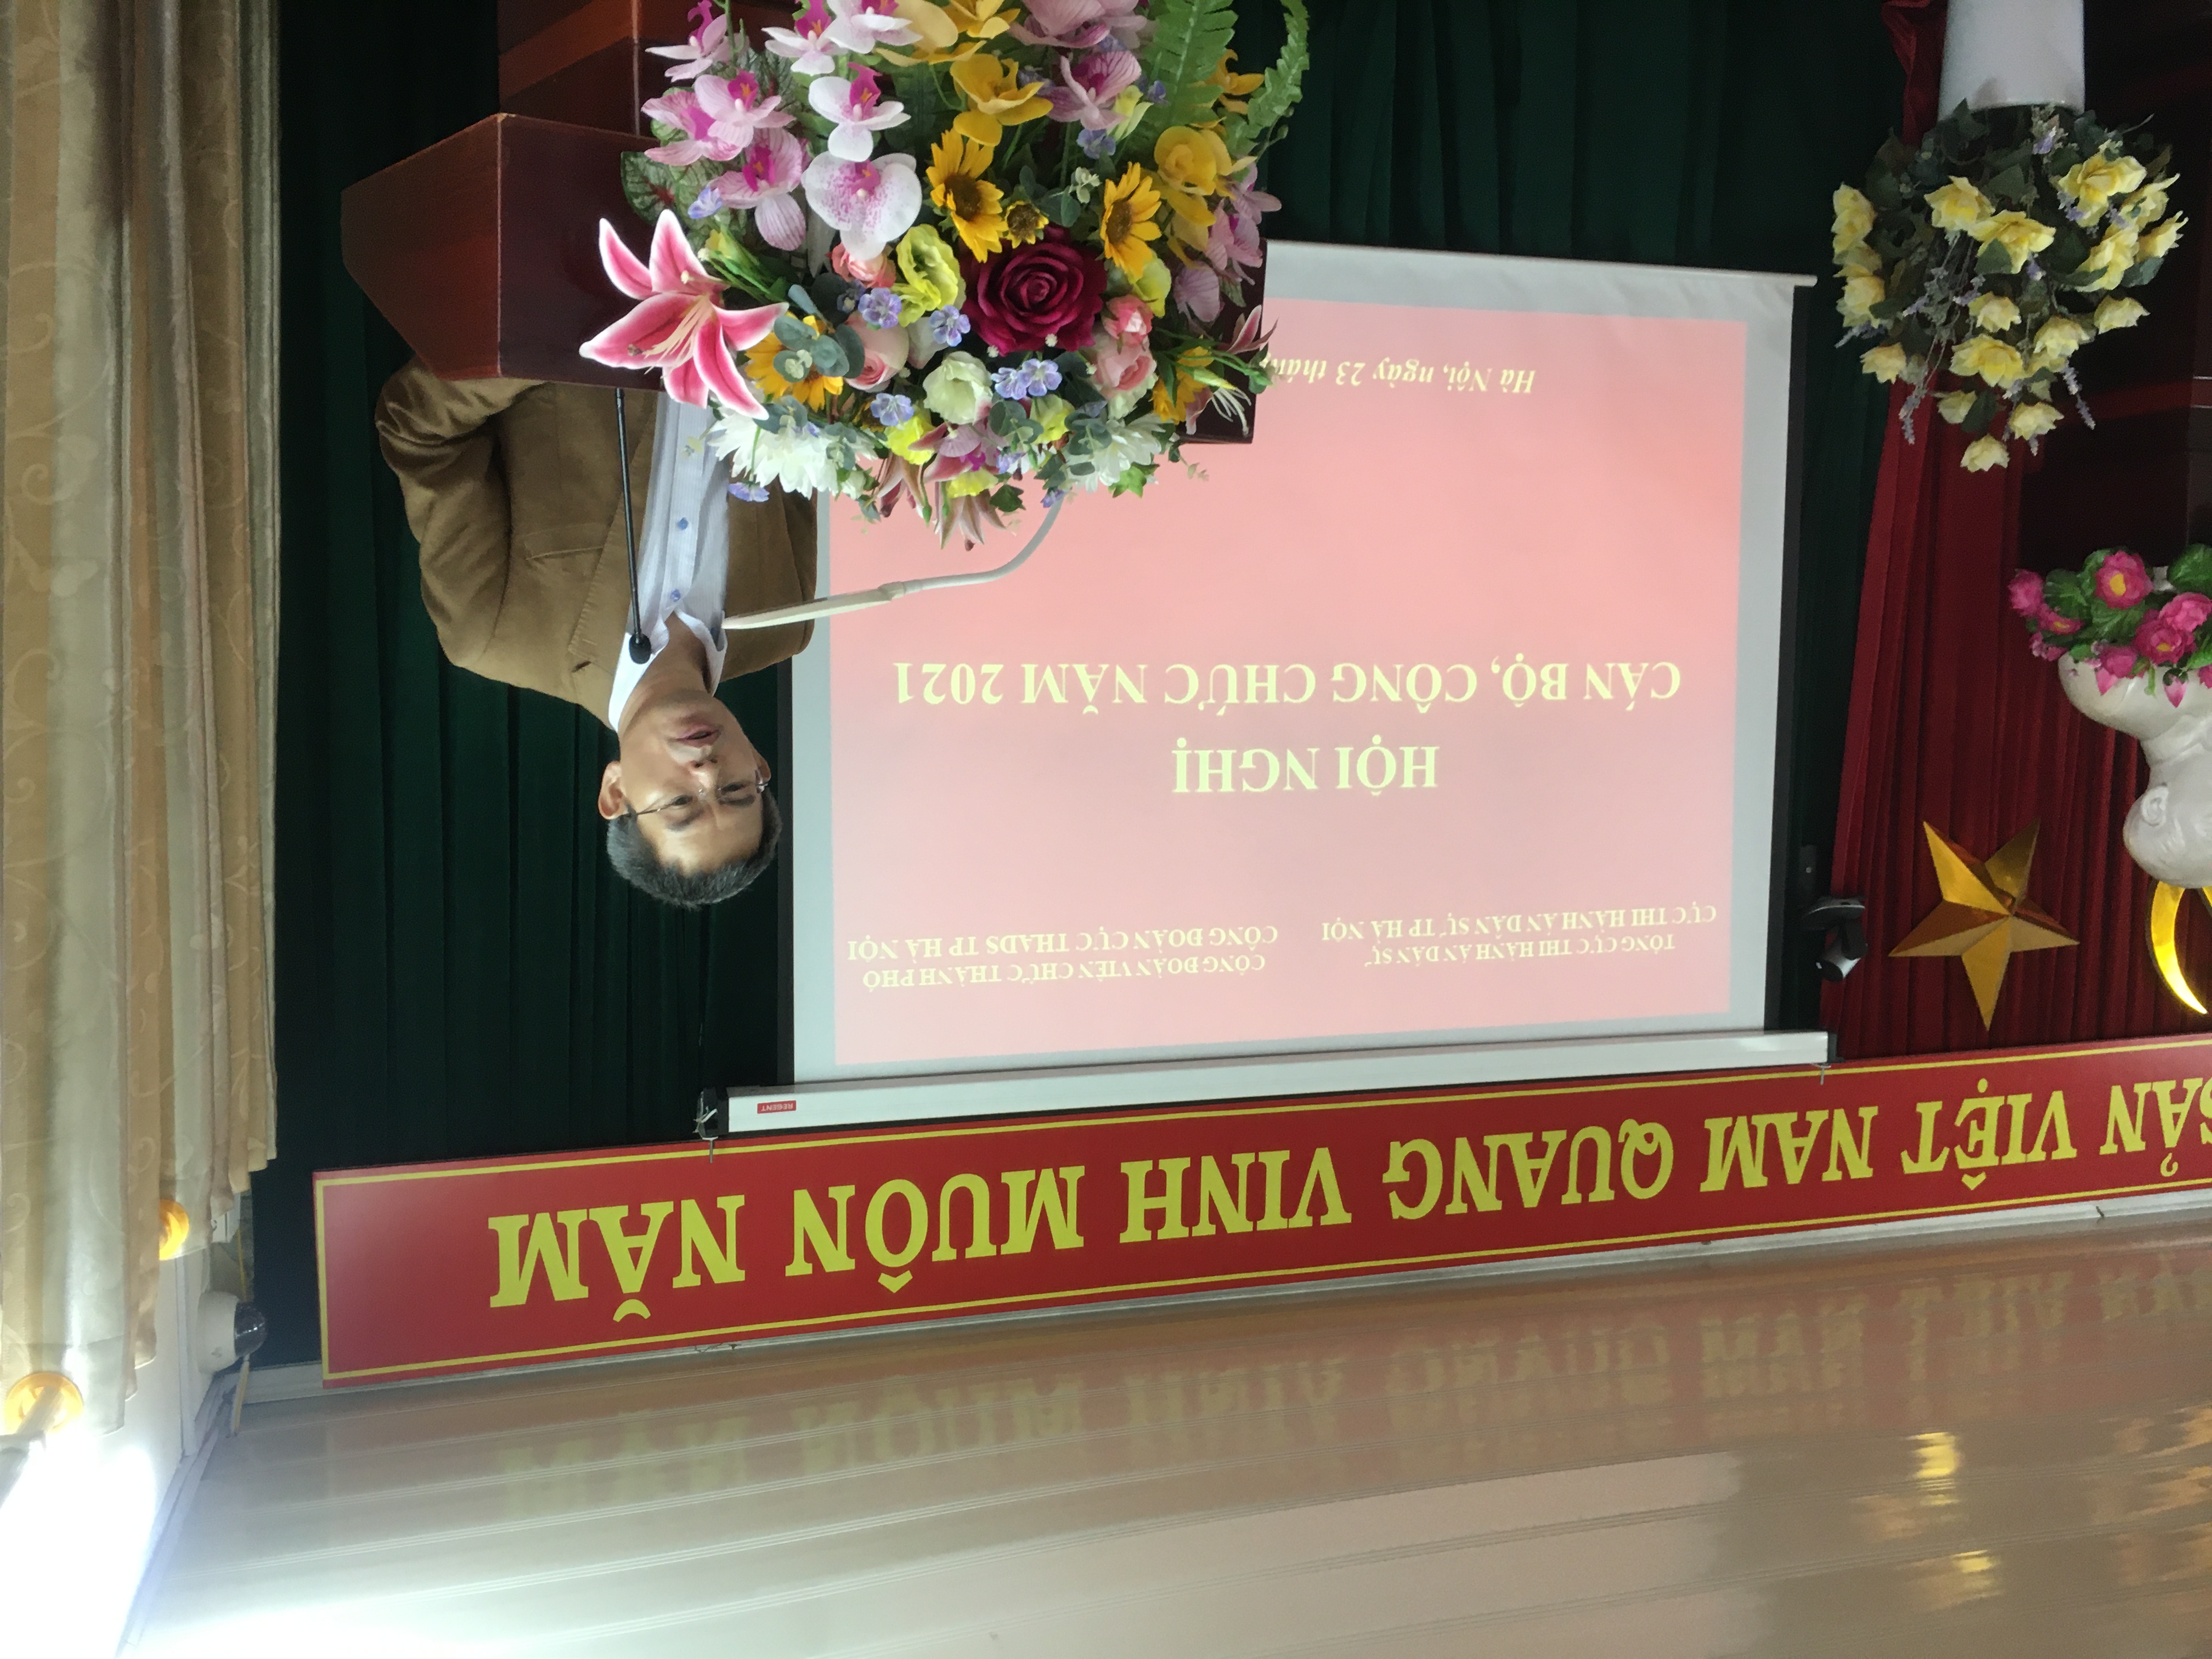 Cục Thi hành án dân sự thành phố Hà Nội tổ chức Hội nghị cán bộ, công chức năm 2021